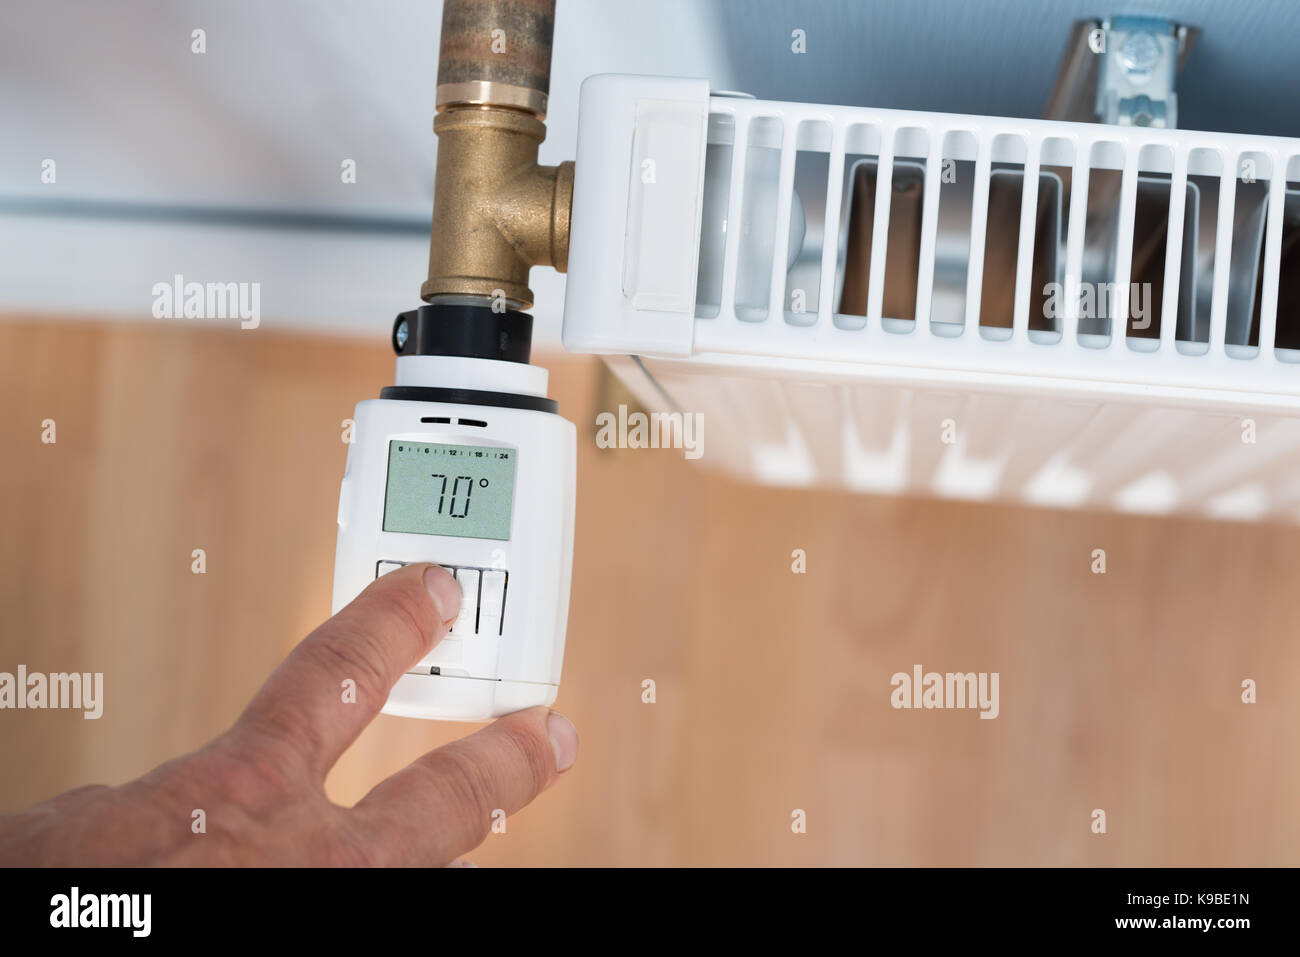 Wall Thermometer Stockfotos und -bilder Kaufen - Alamy